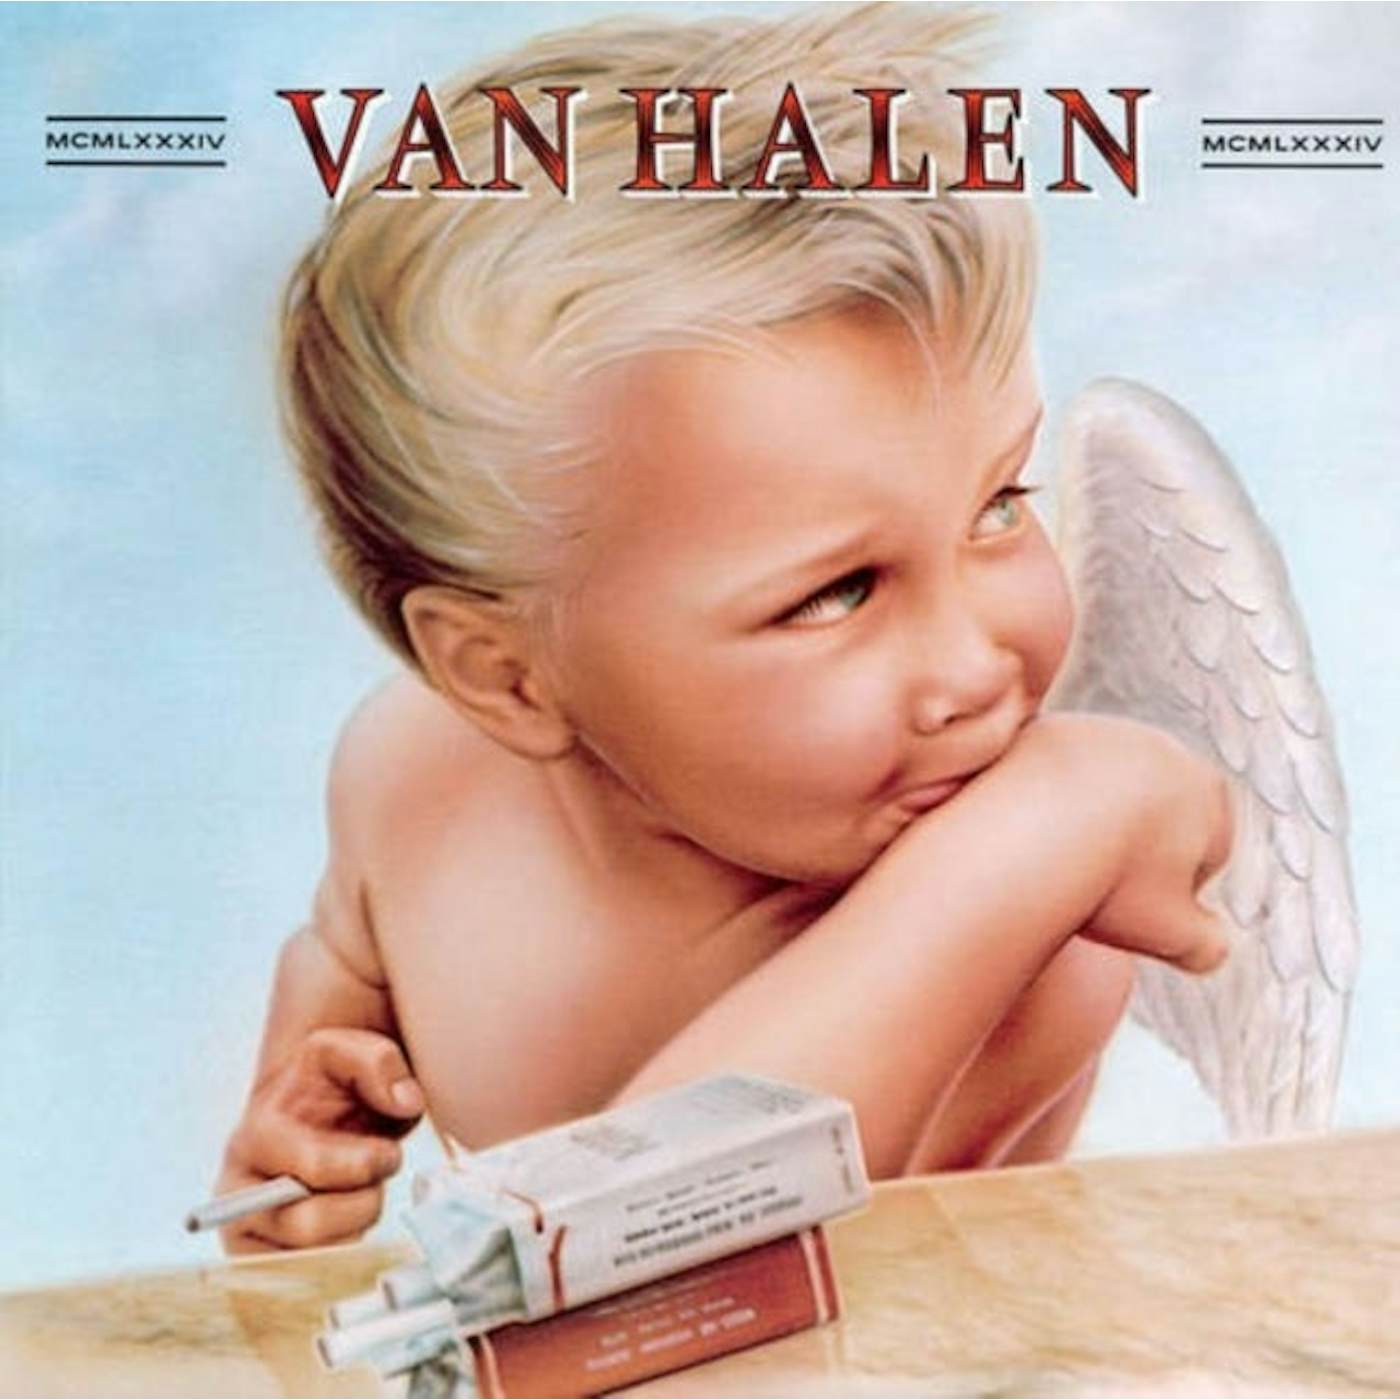 Van Halen LP Vinyl Record - 19 84 (Remastered)